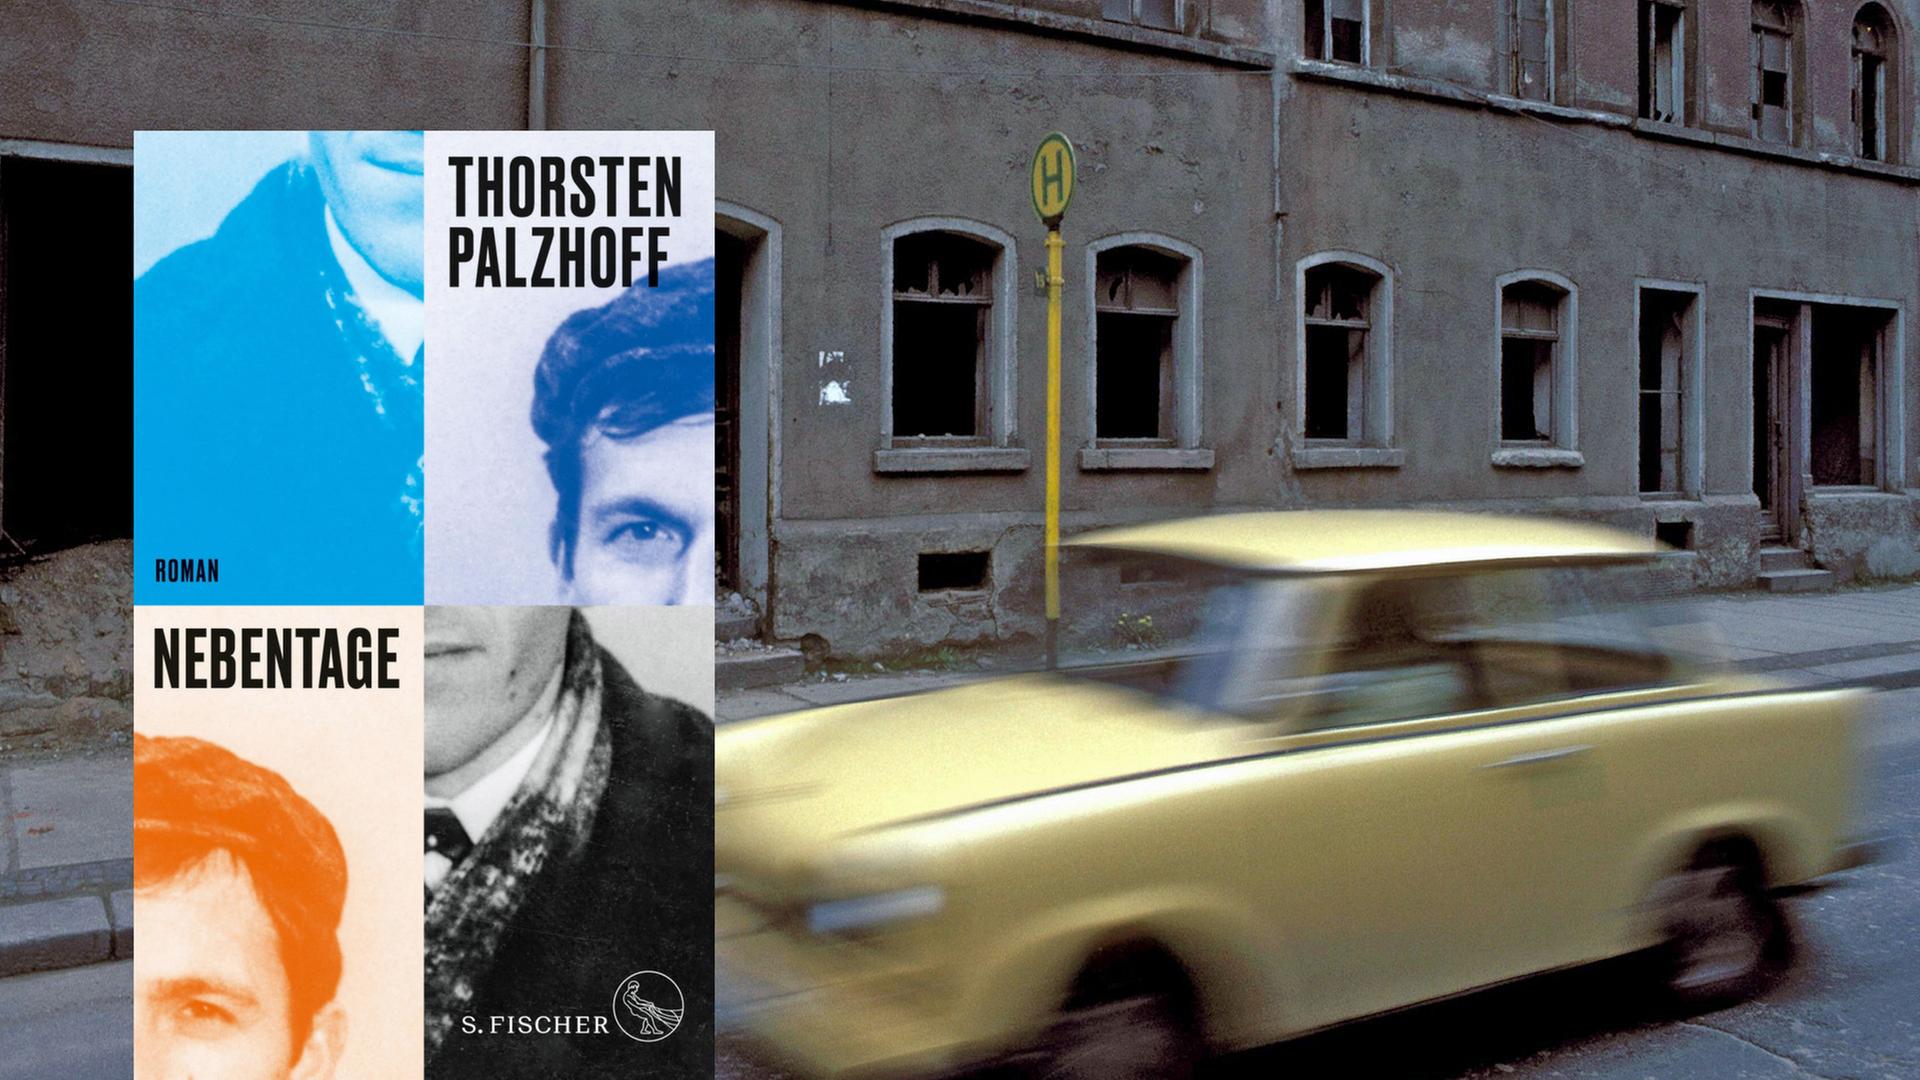 In "Nebentage" erzählt Thorsten Palzhof die Geschichte eiens jungen Taugenichts, den es als Wessi nach Leipzig zieht.